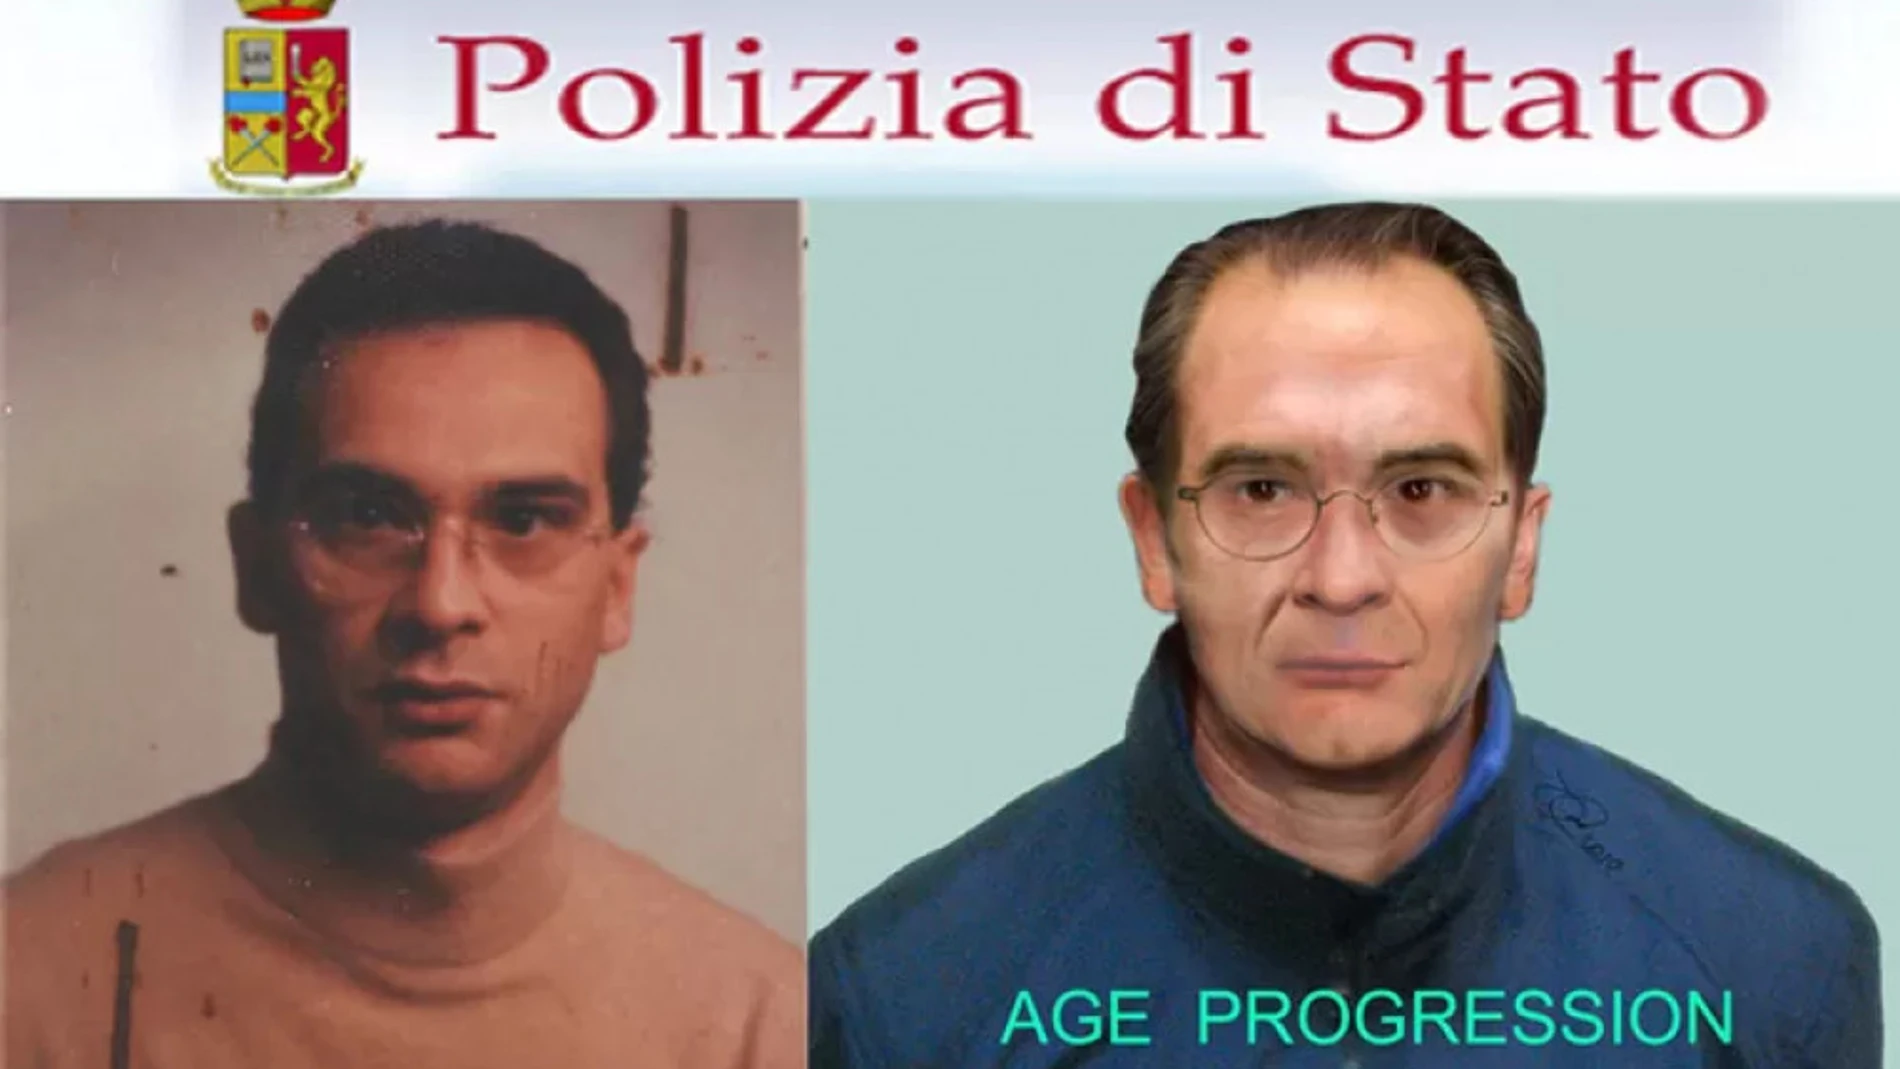 La Policía detiene a un fan de F1 tras confundirle con el líder de la mafia siciliana, en busca y captura desde 1993